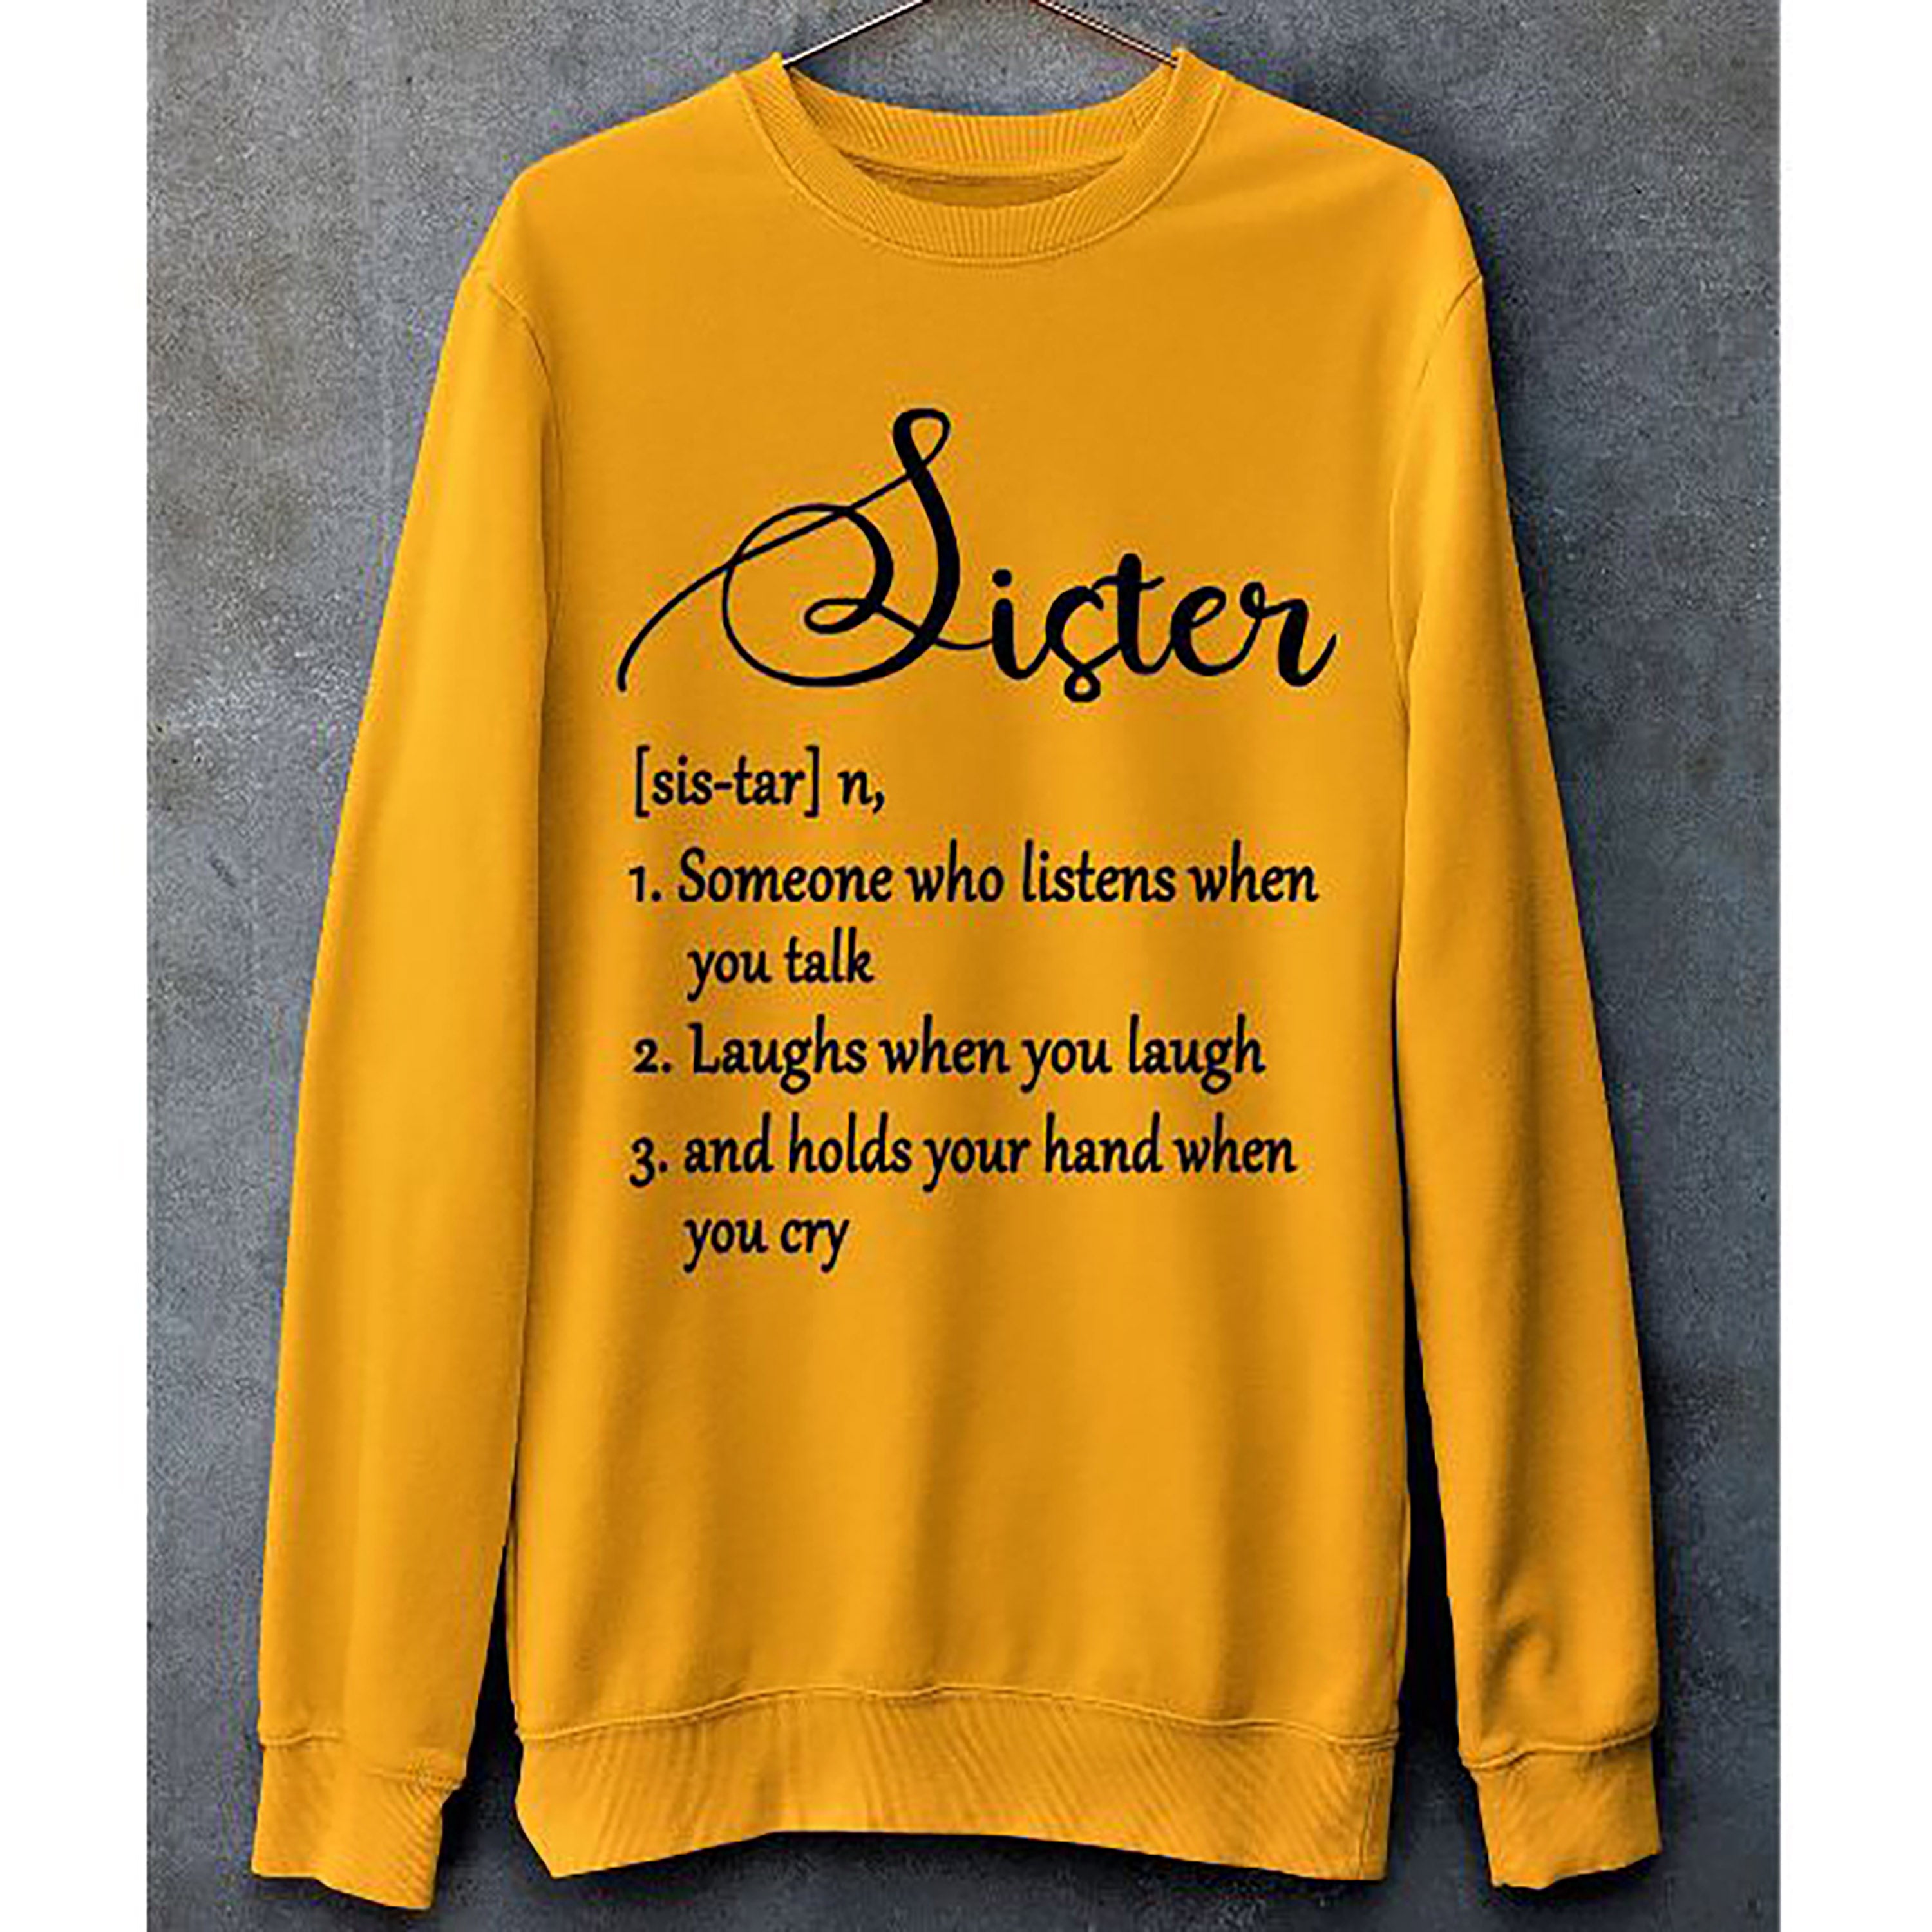 "SISTER(SIS-TAR")" - Hoodie & Sweatshirt.